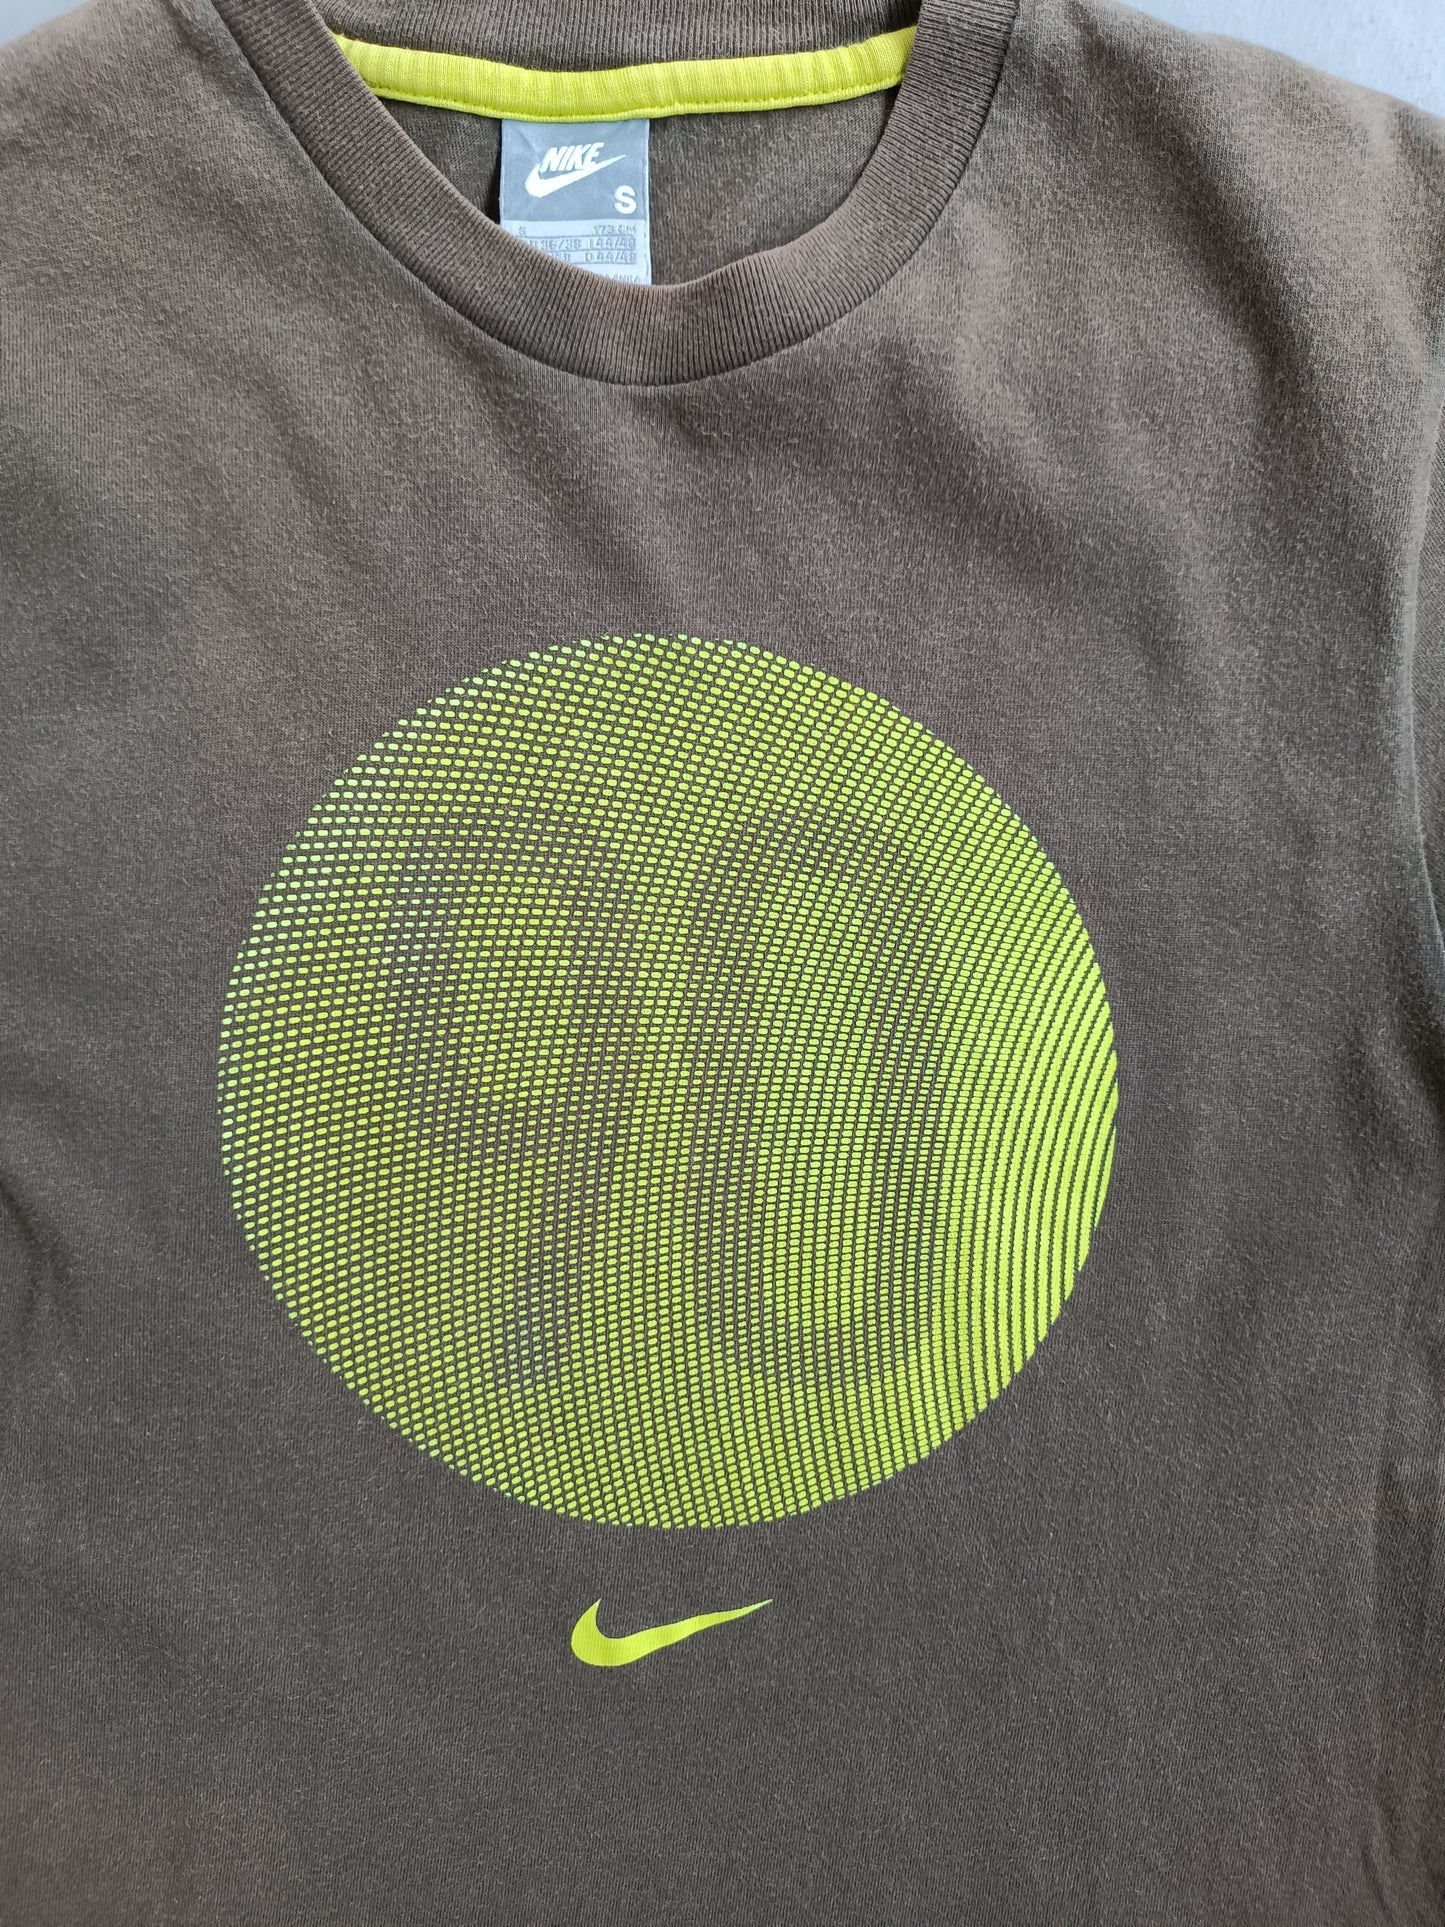 Nike Total Ninety - S